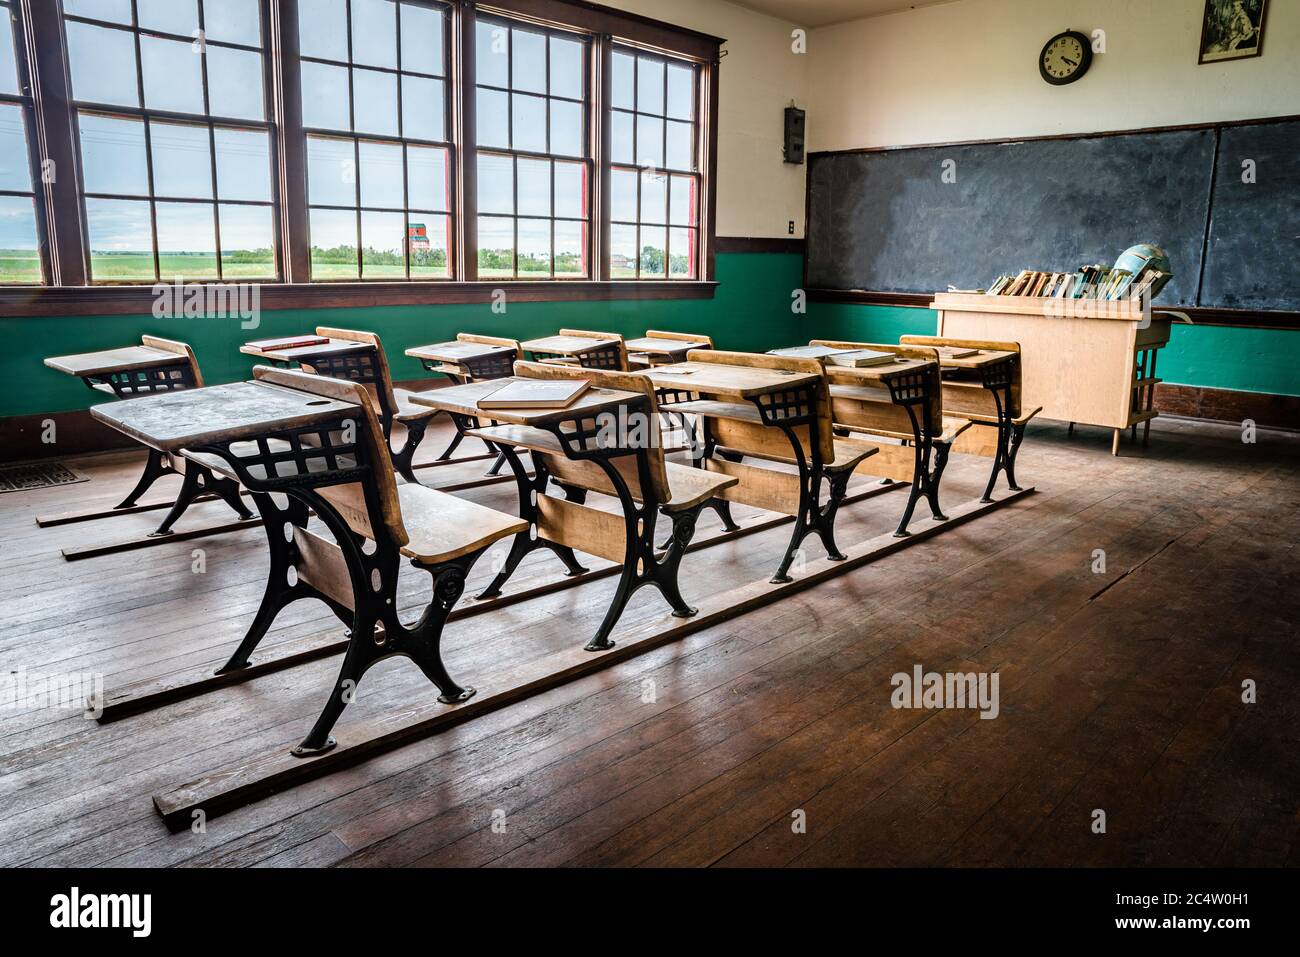 Leader, SK/Canada - 19 giugno 2020: L'interno di una vecchia scuola rurale a una stanza nelle praterie vicino a leader, Saskatchewan Foto Stock